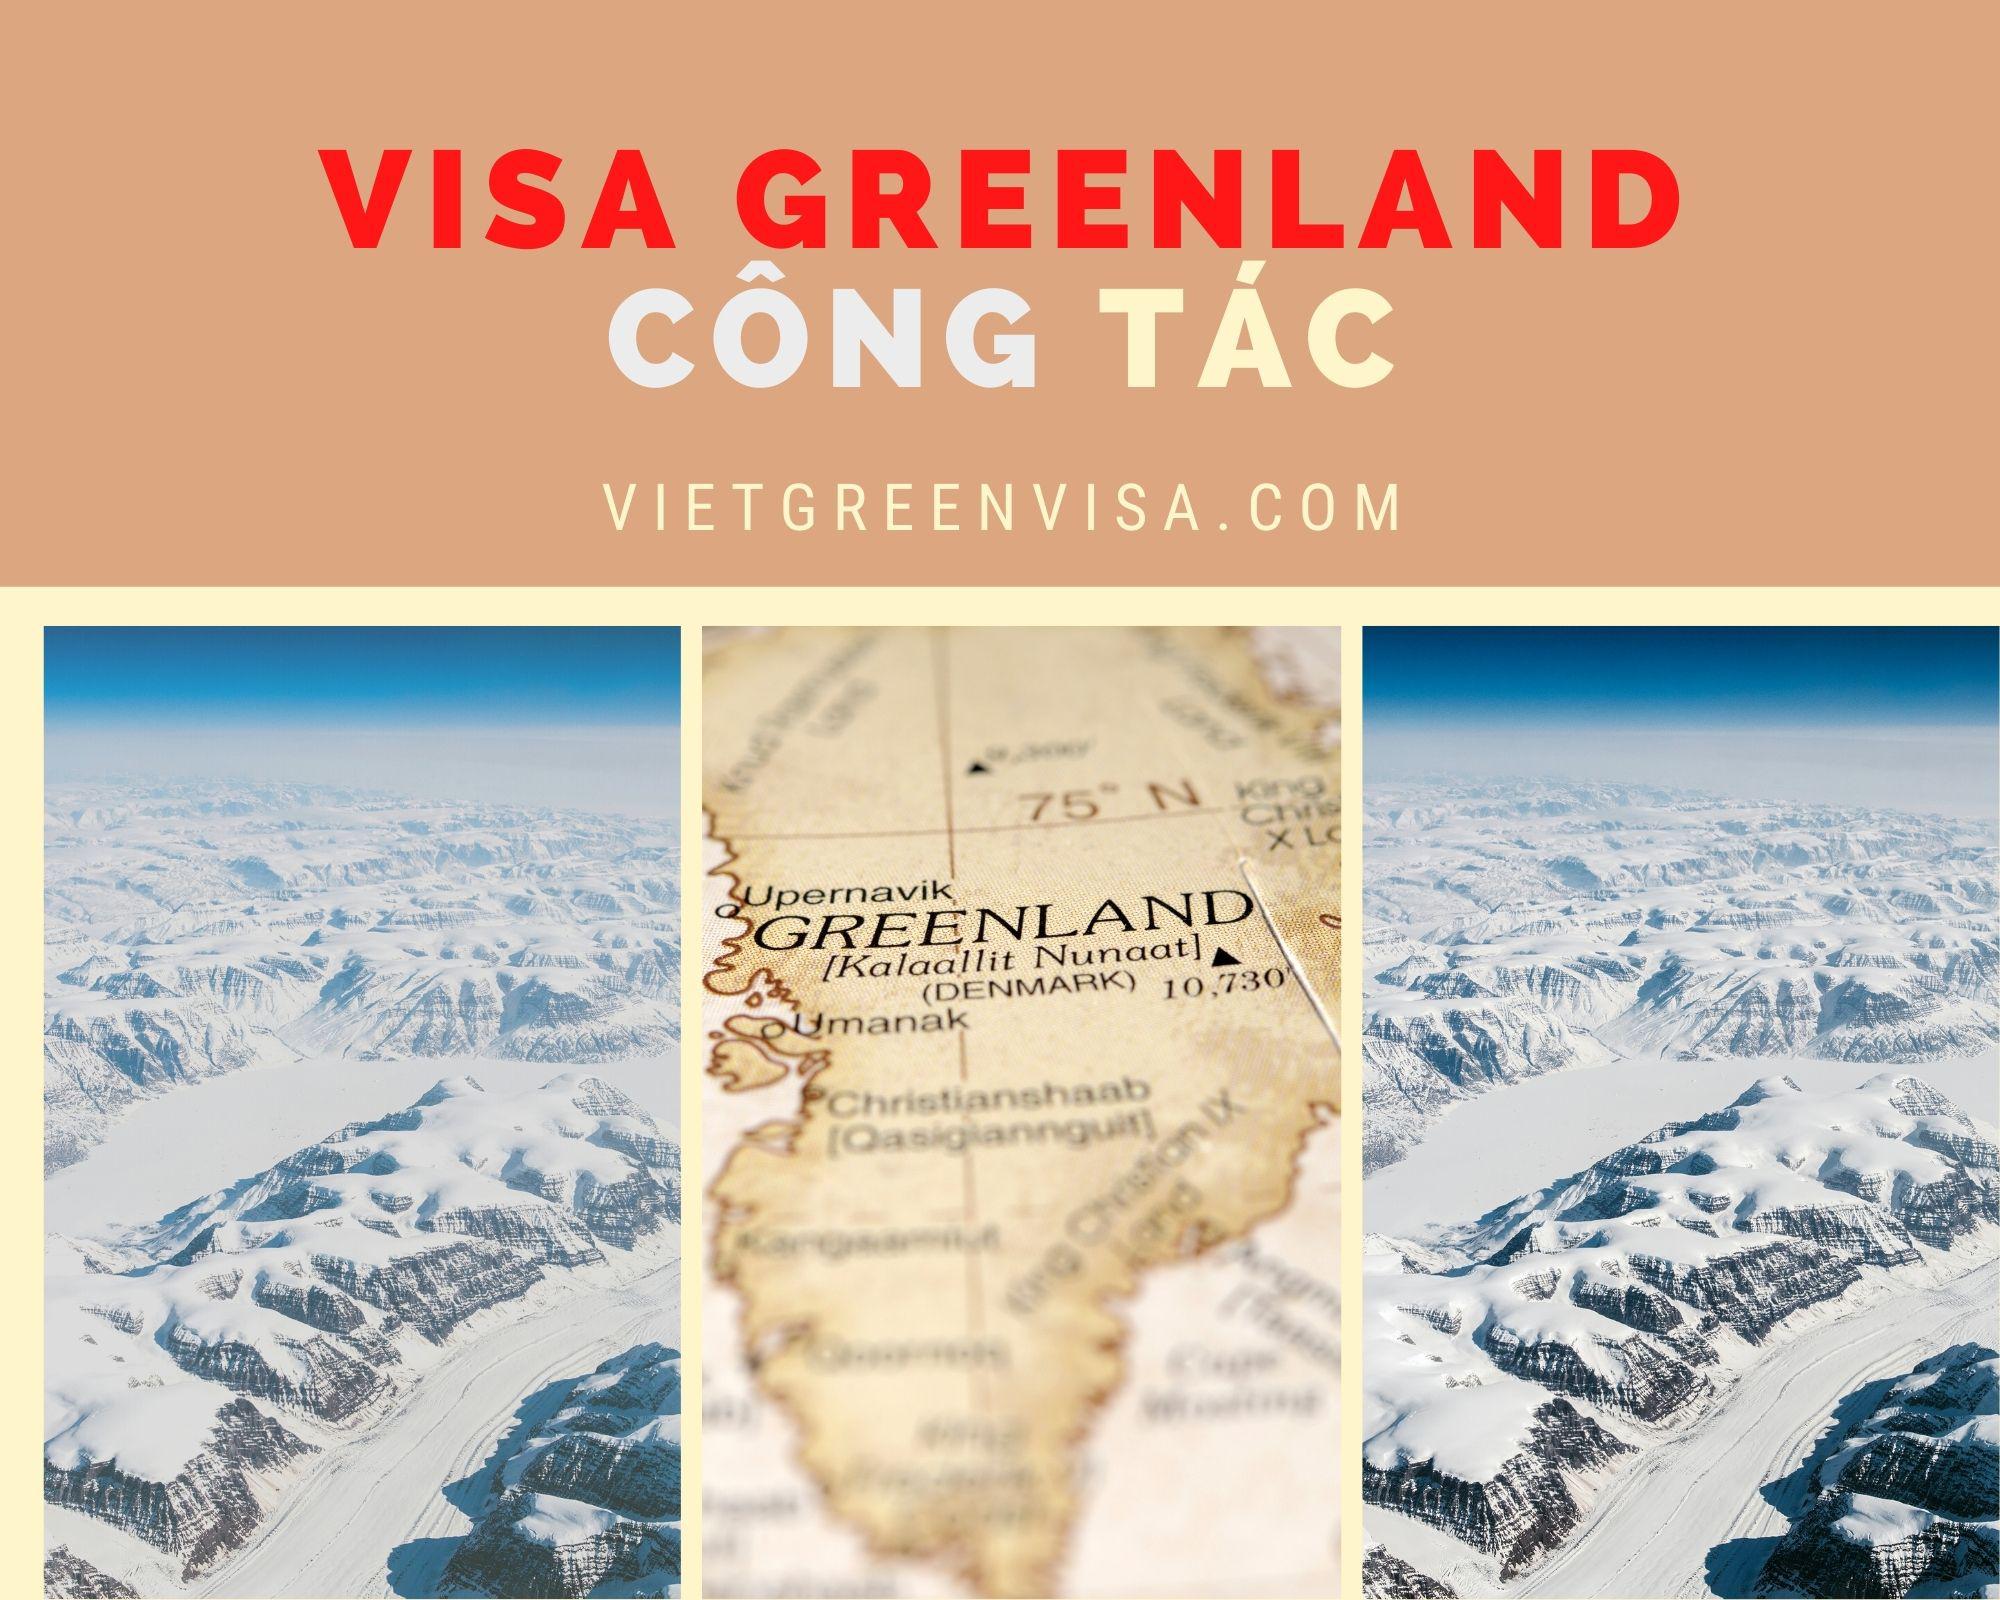 Dịch vụ visa Greenland diện công tác nhanh chóng